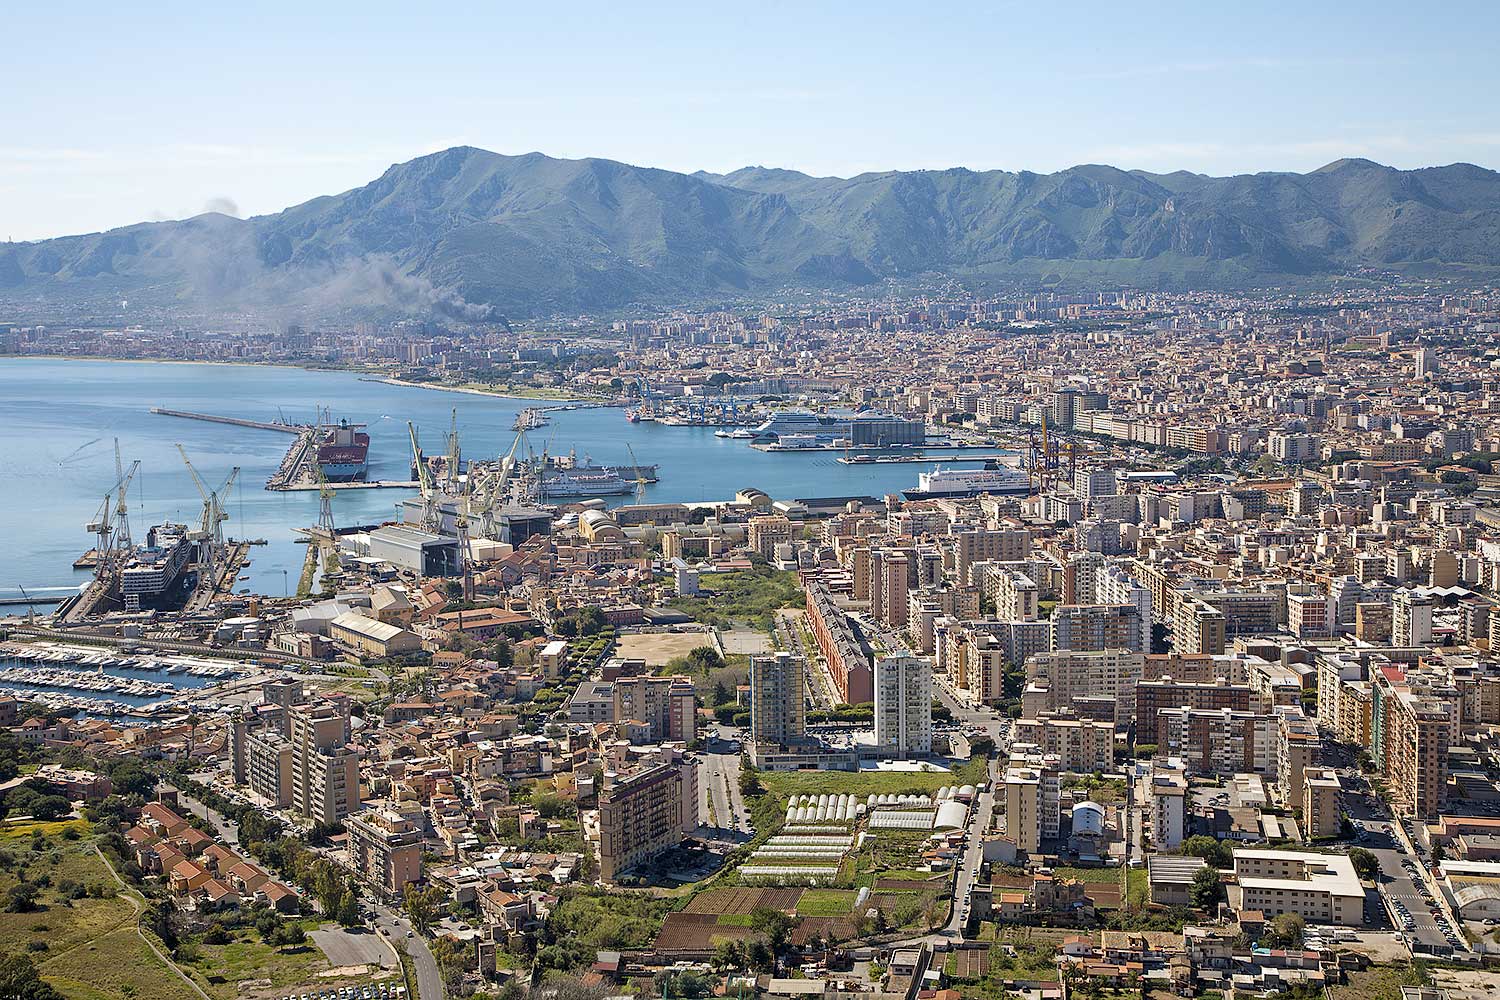 Palermo gezien vanaf Monte Pellegrino